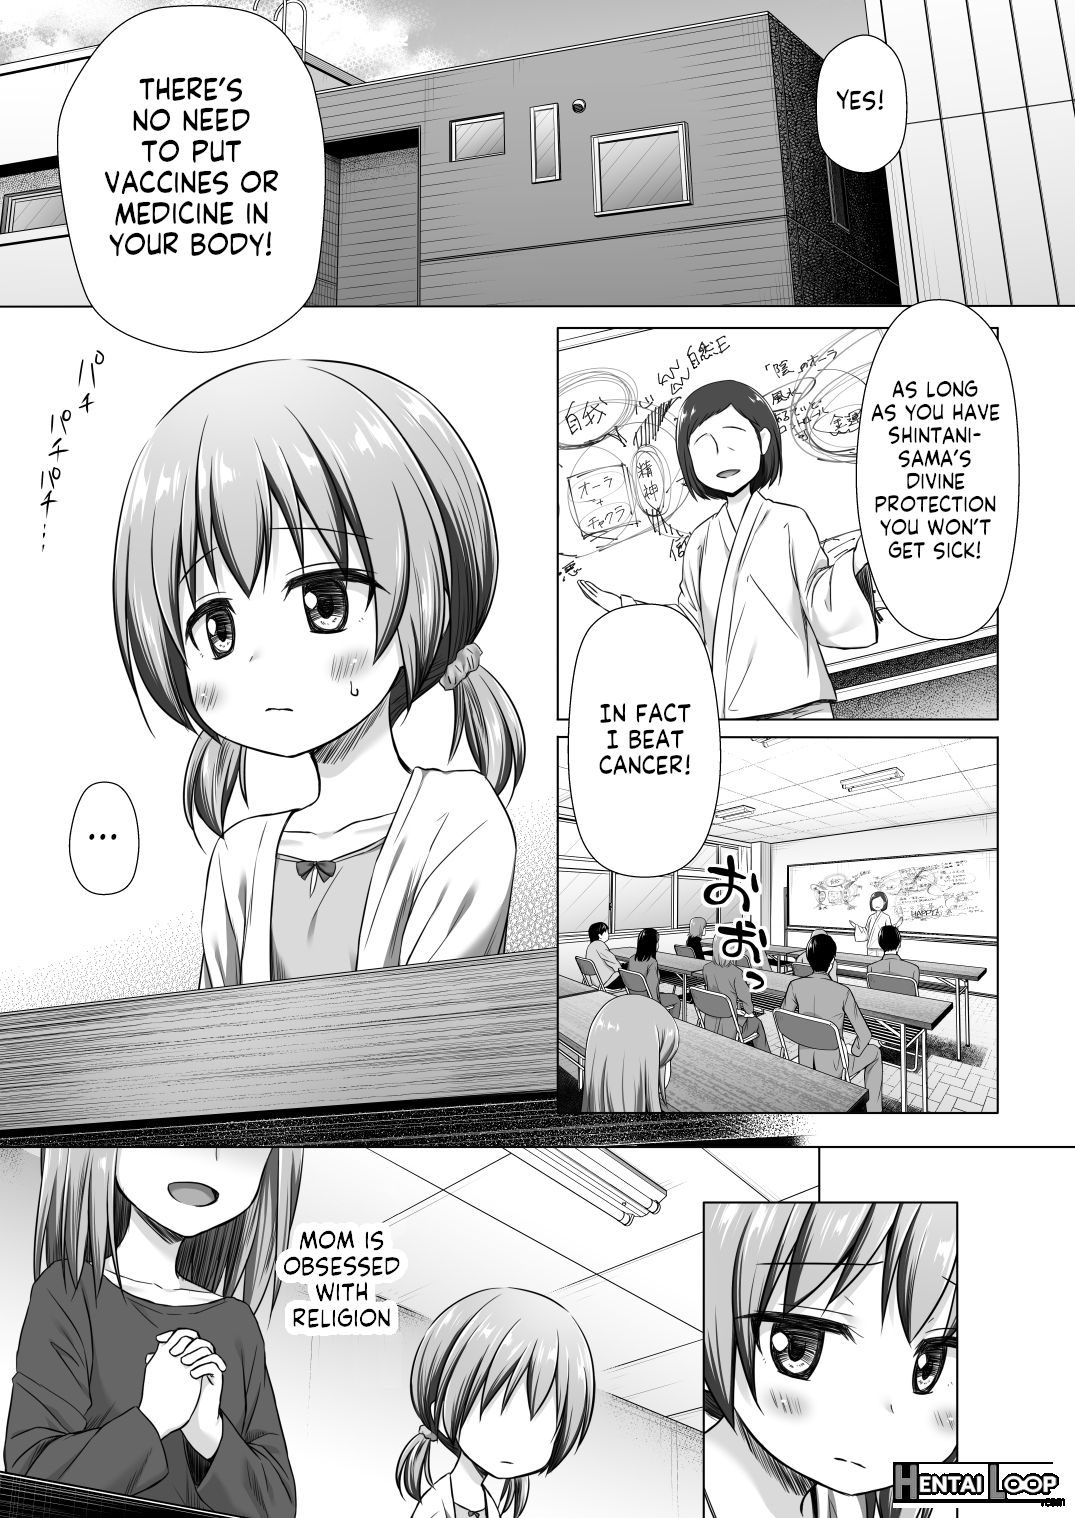 Hinano-chan's Situation page 2